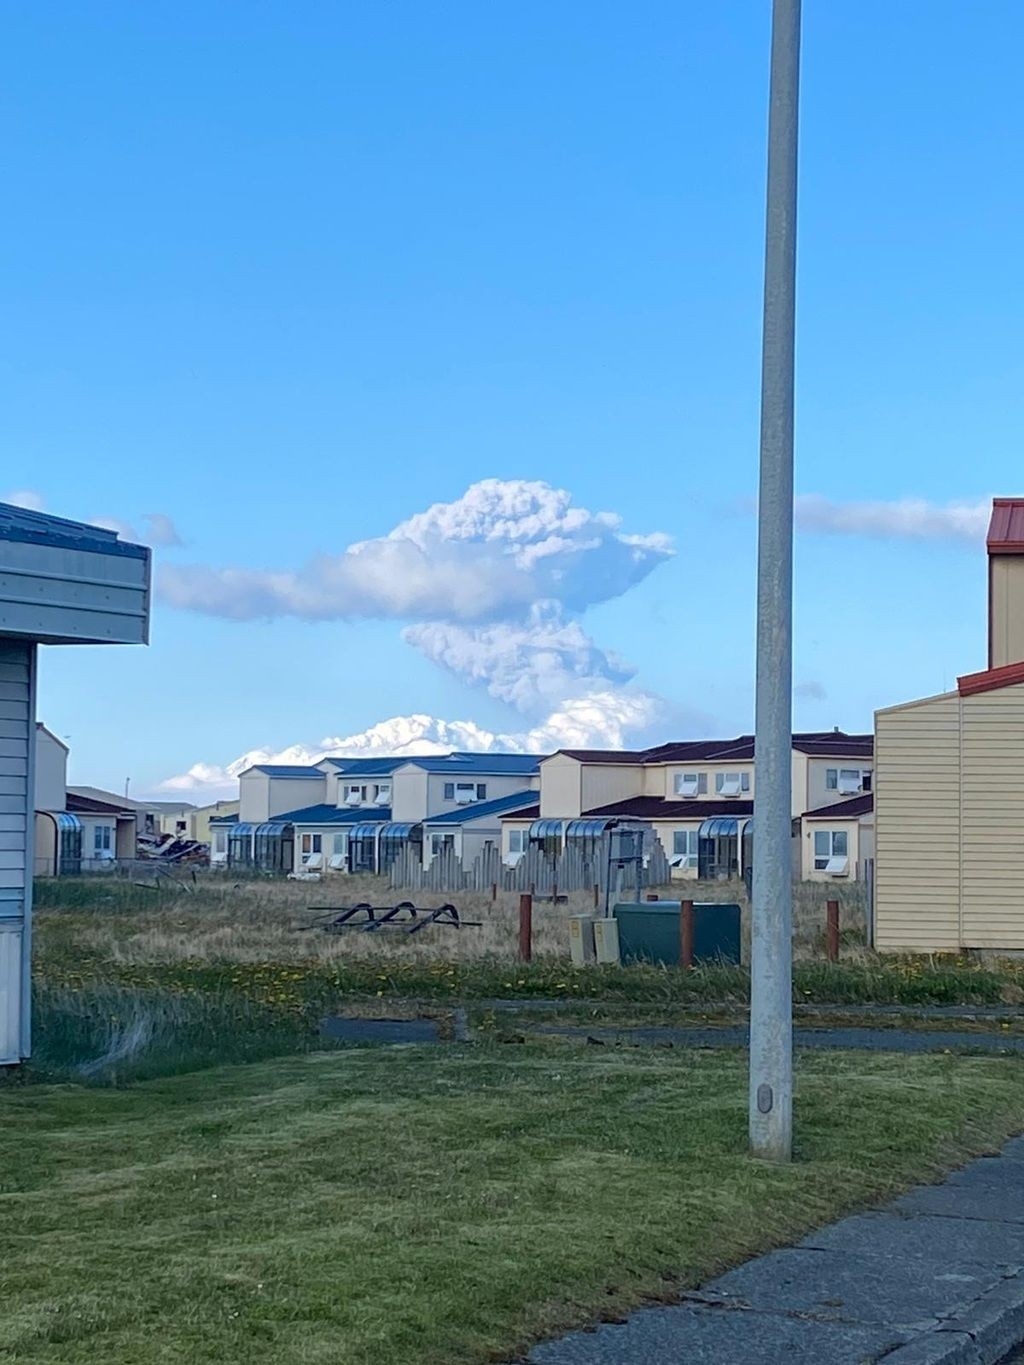 Alaska Yarımadası’nda yanardağ patlaması: Kırmızı alarm verildi